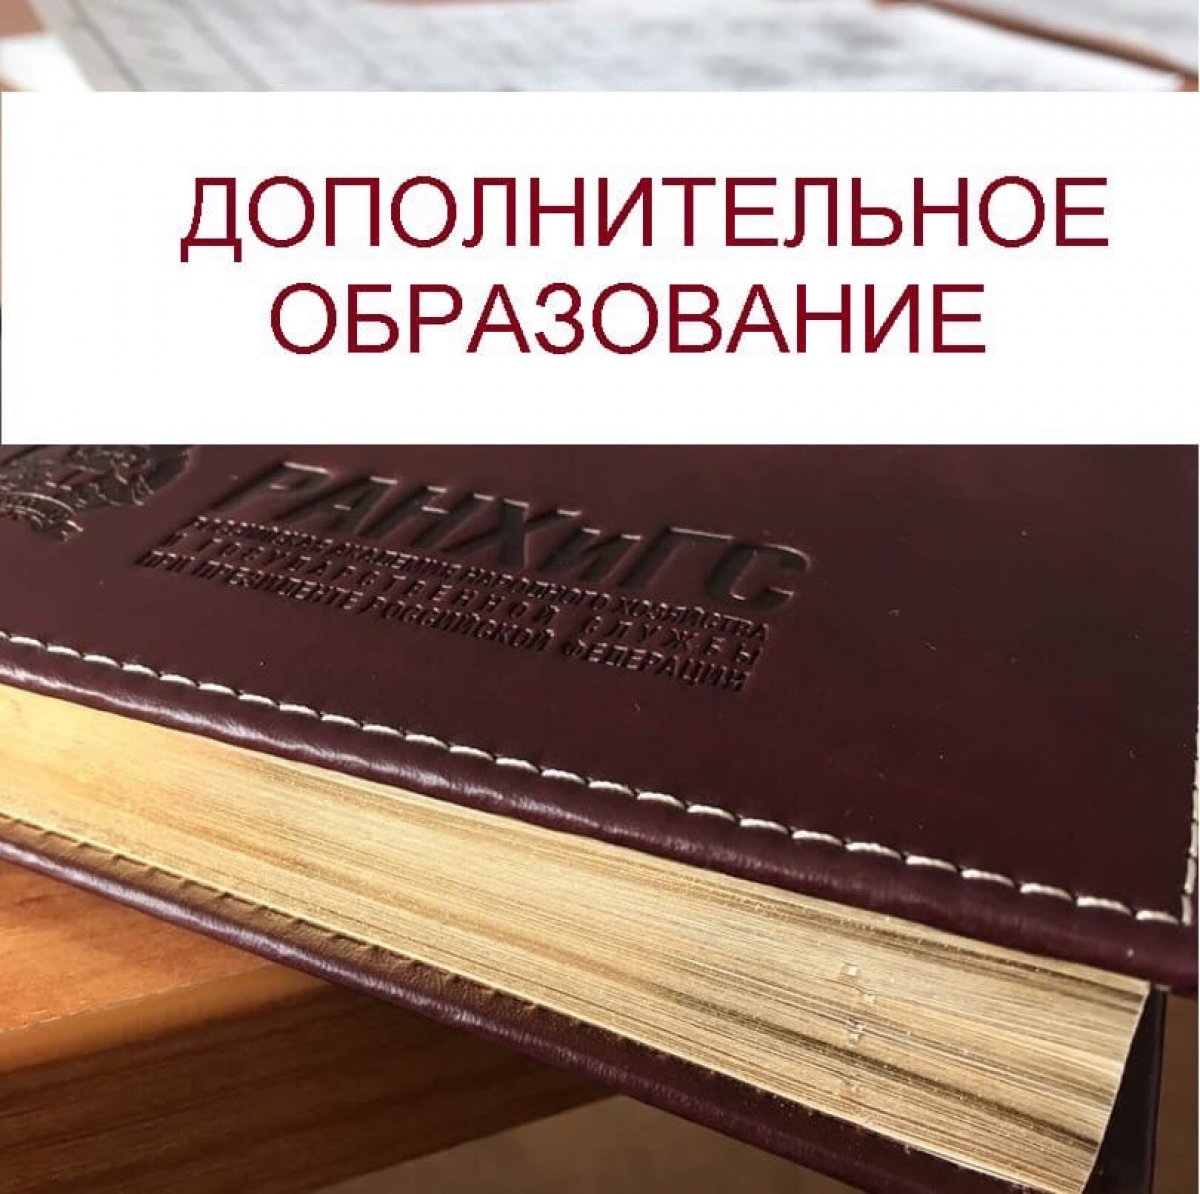 ☝️Дополнительное образование в Омском филиале Президентской академи🇷🇺